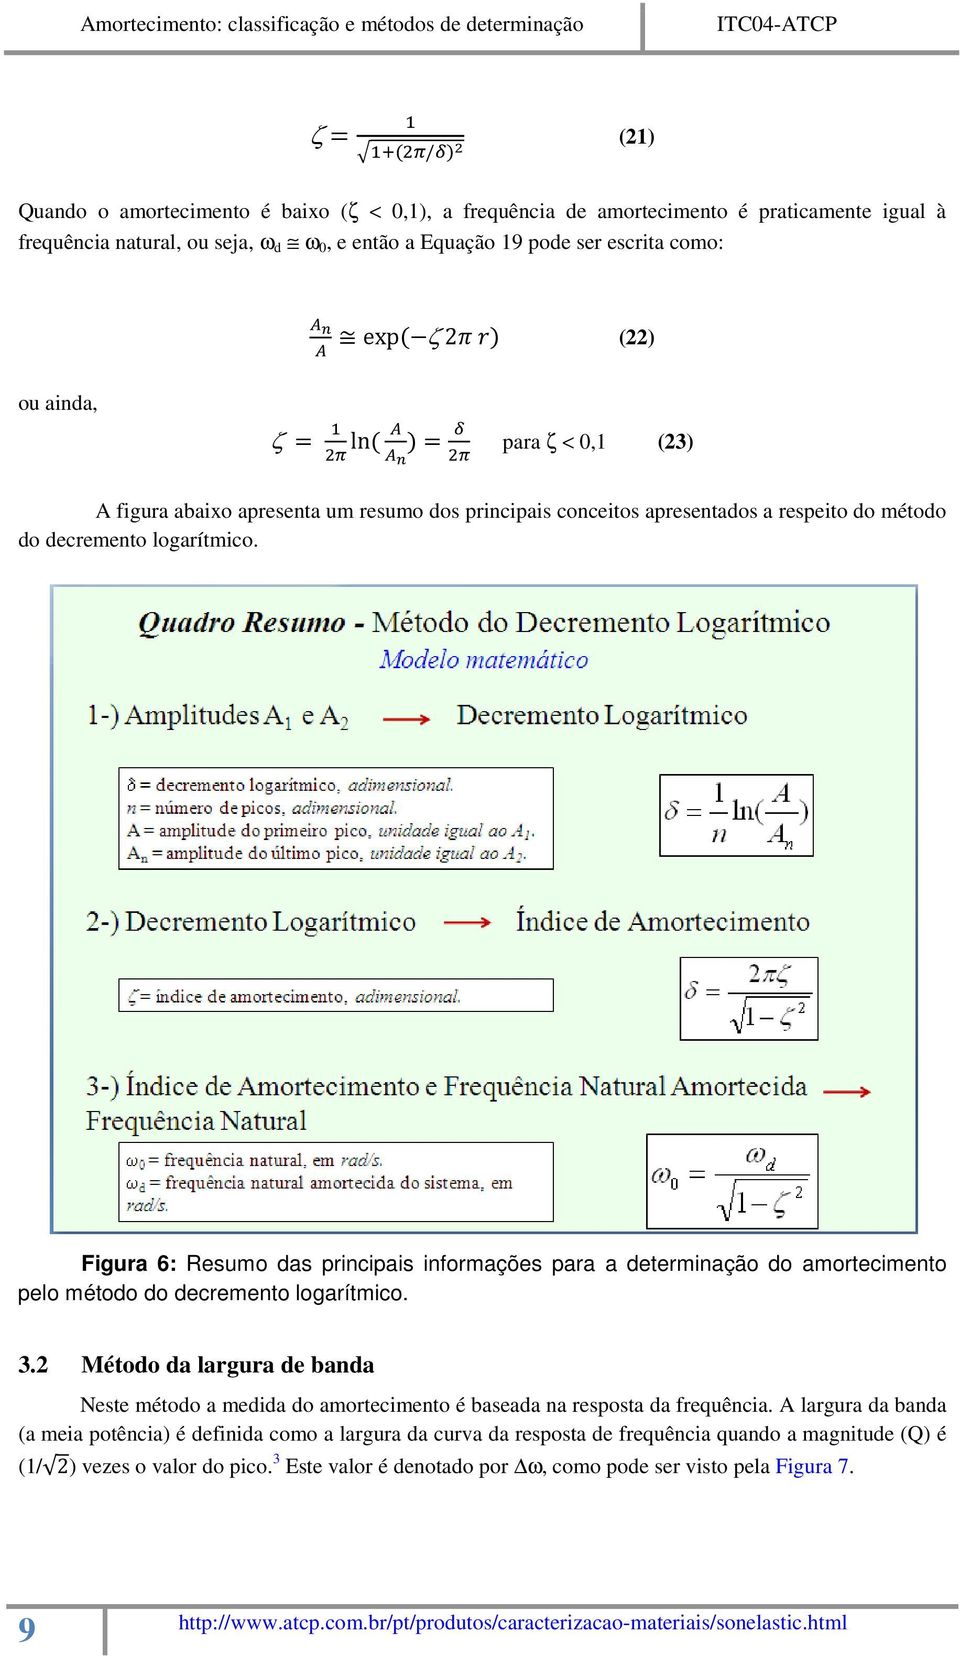 Figura 6: Resumo das principais informações para a determinação do amortecimento pelo método do decremento logarítmico. 3.